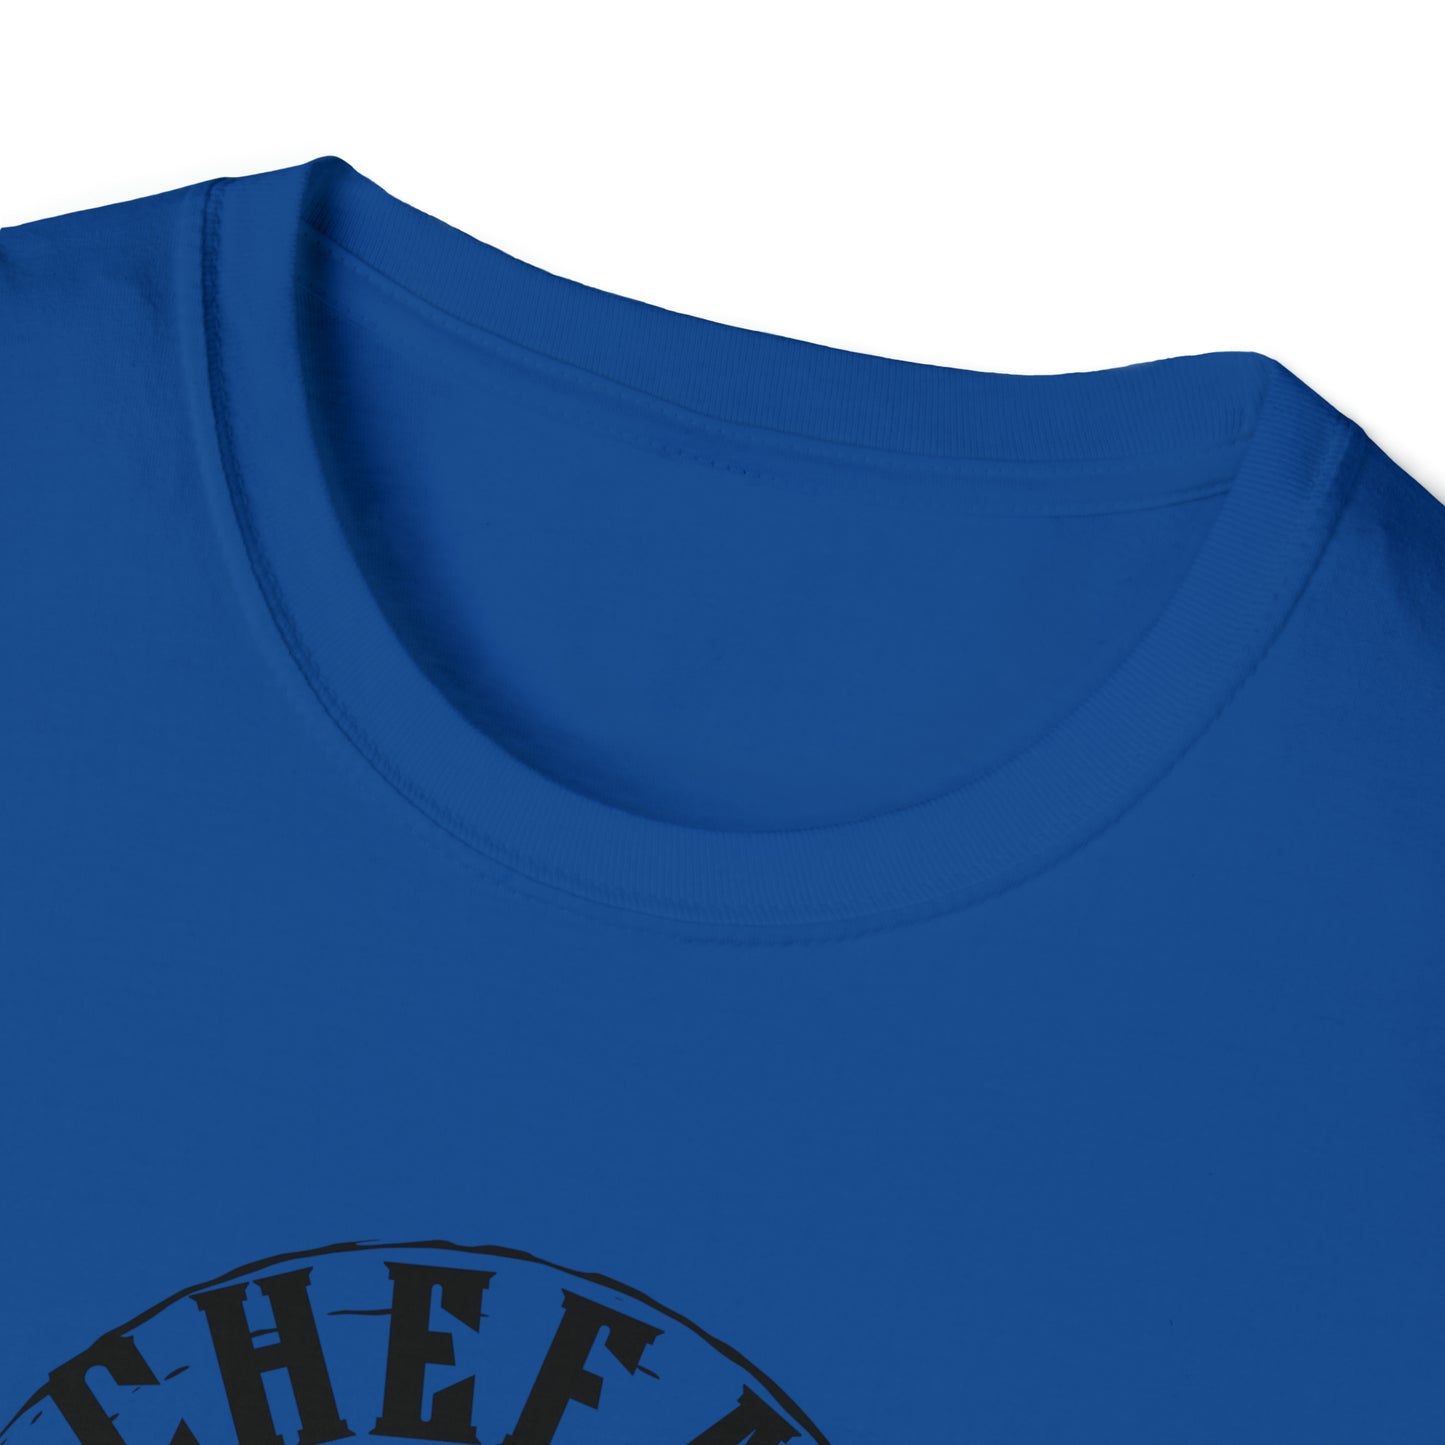 Chefao Surf I, Unisex Softstyle T-Shirt